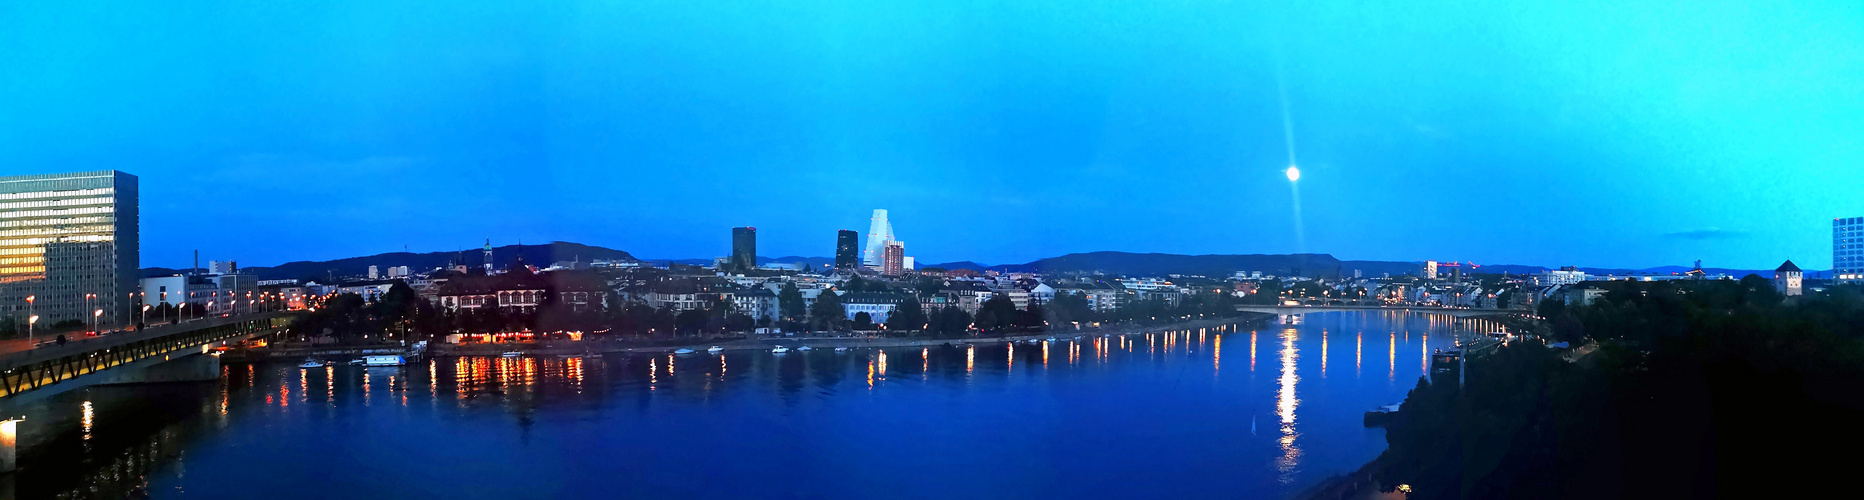 Blaue Stunde Panorama